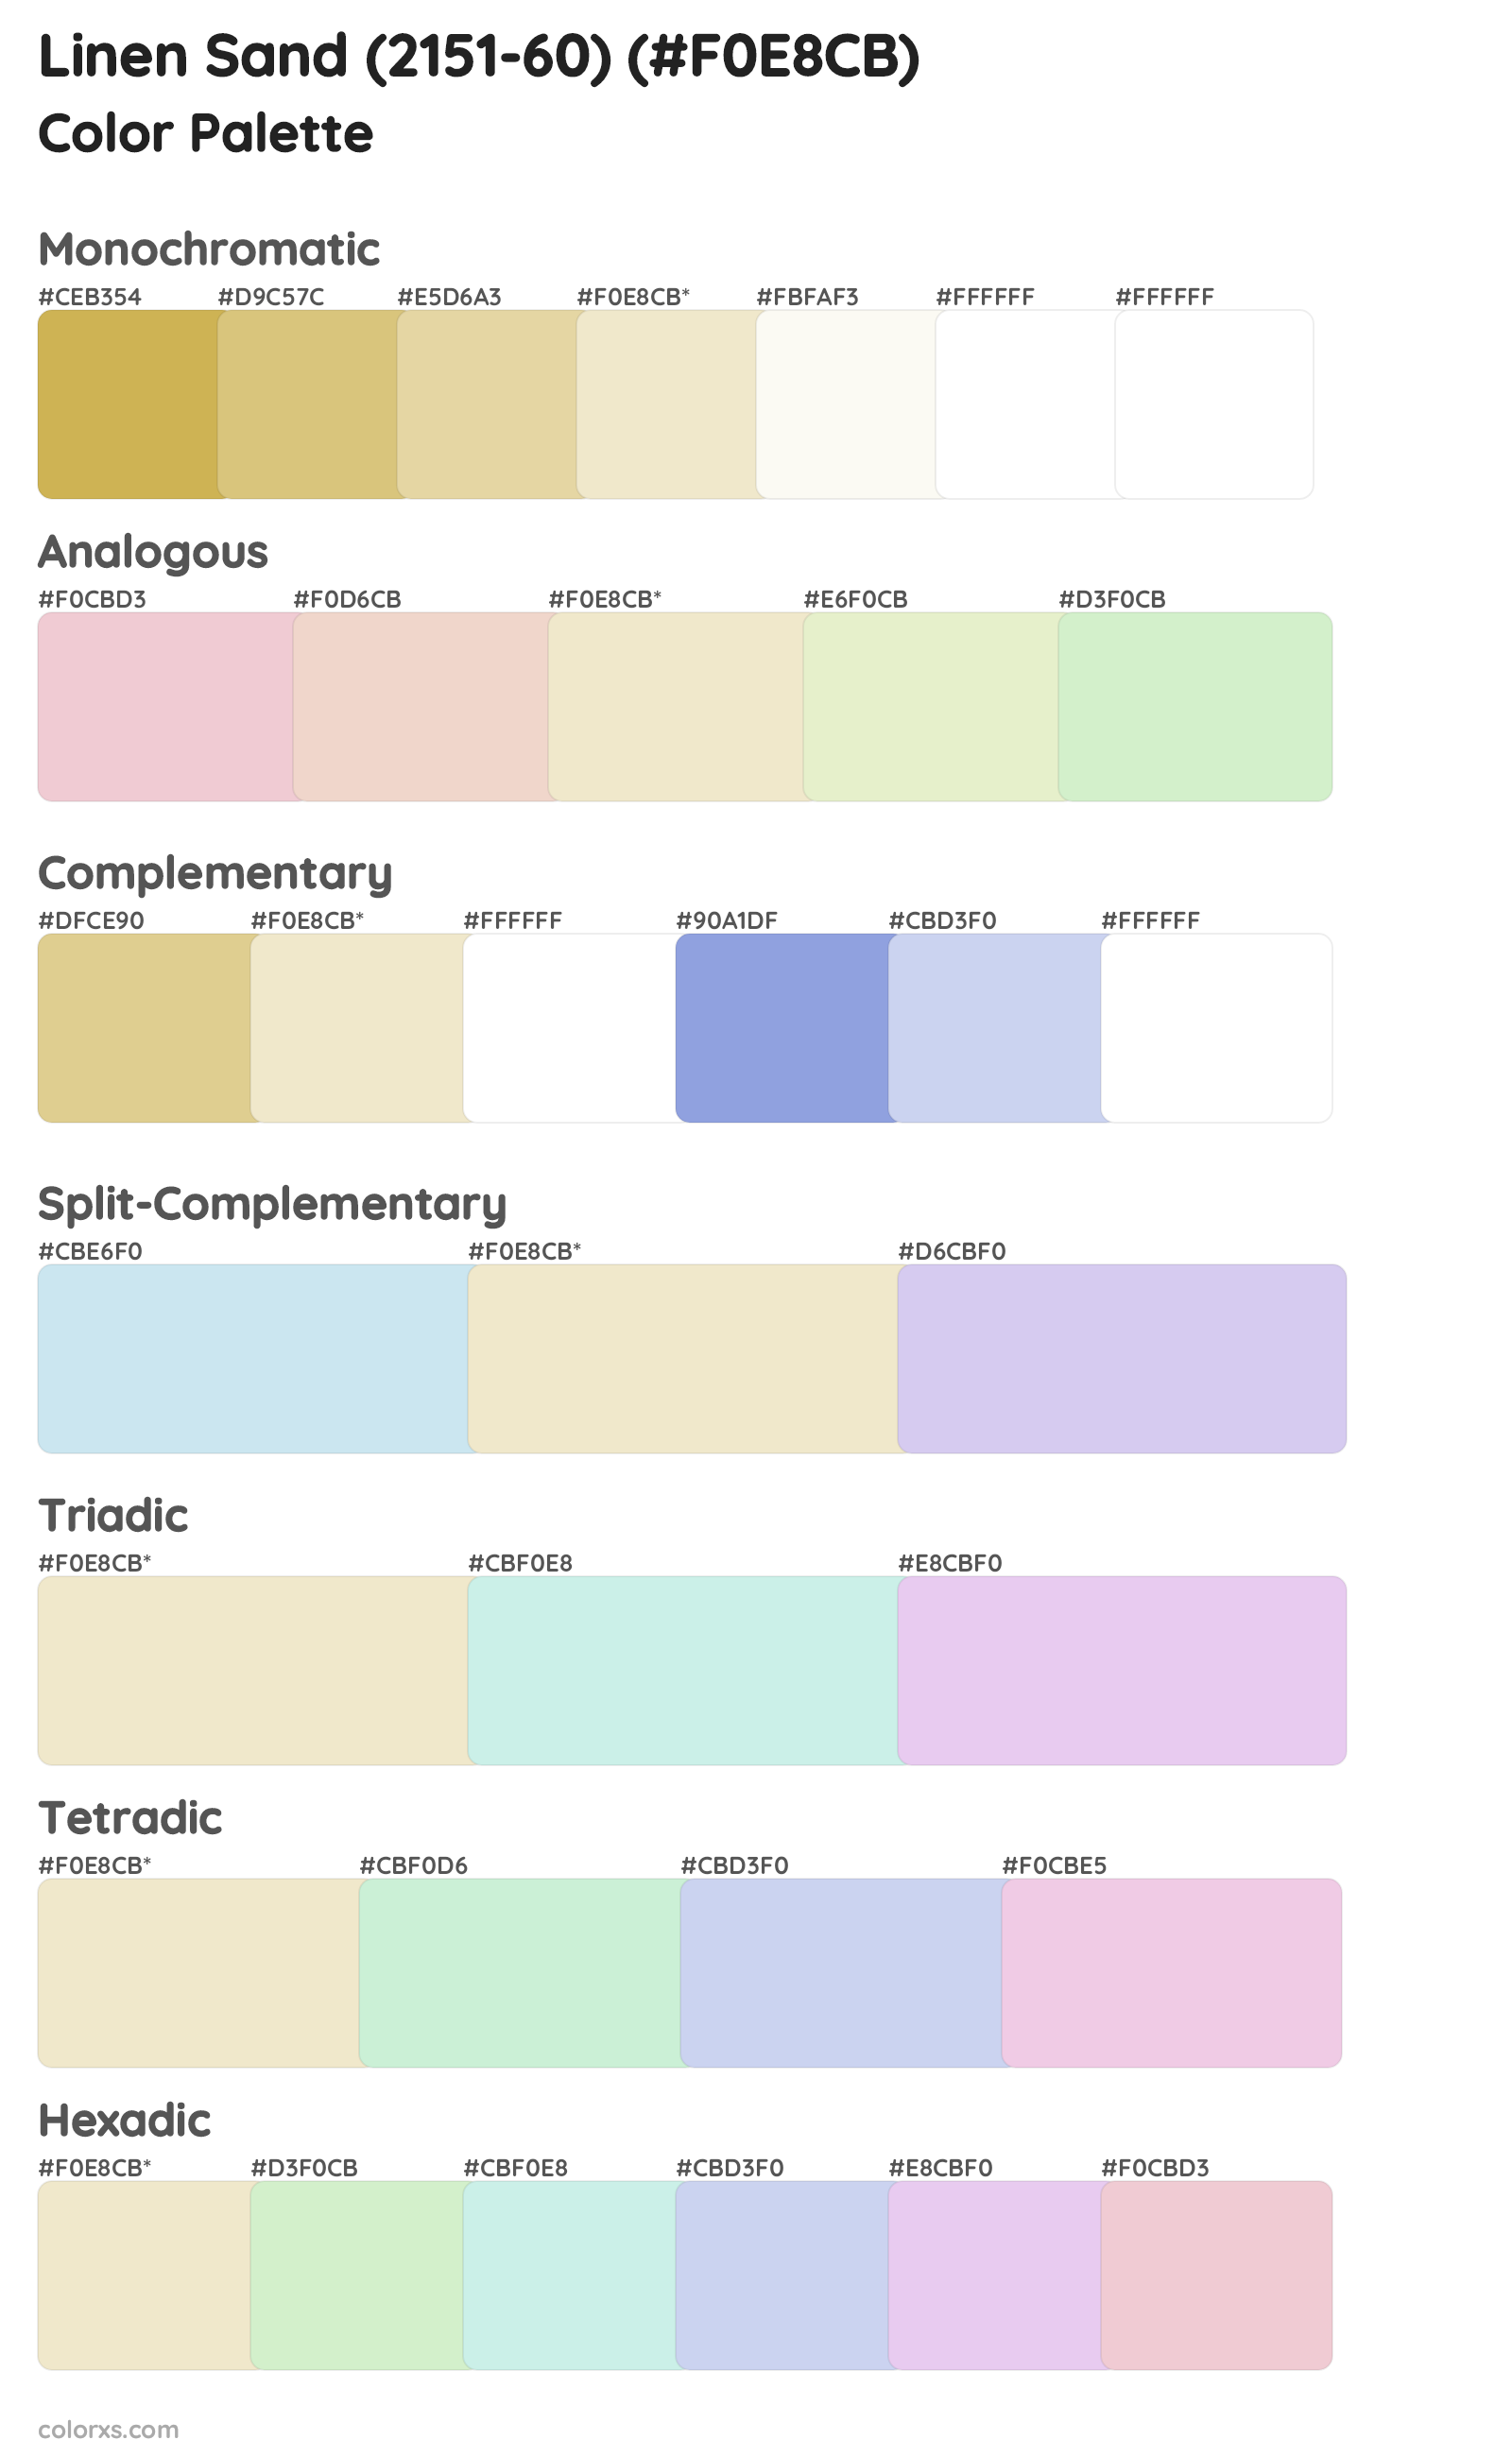 Linen Sand (2151-60) Color Scheme Palettes